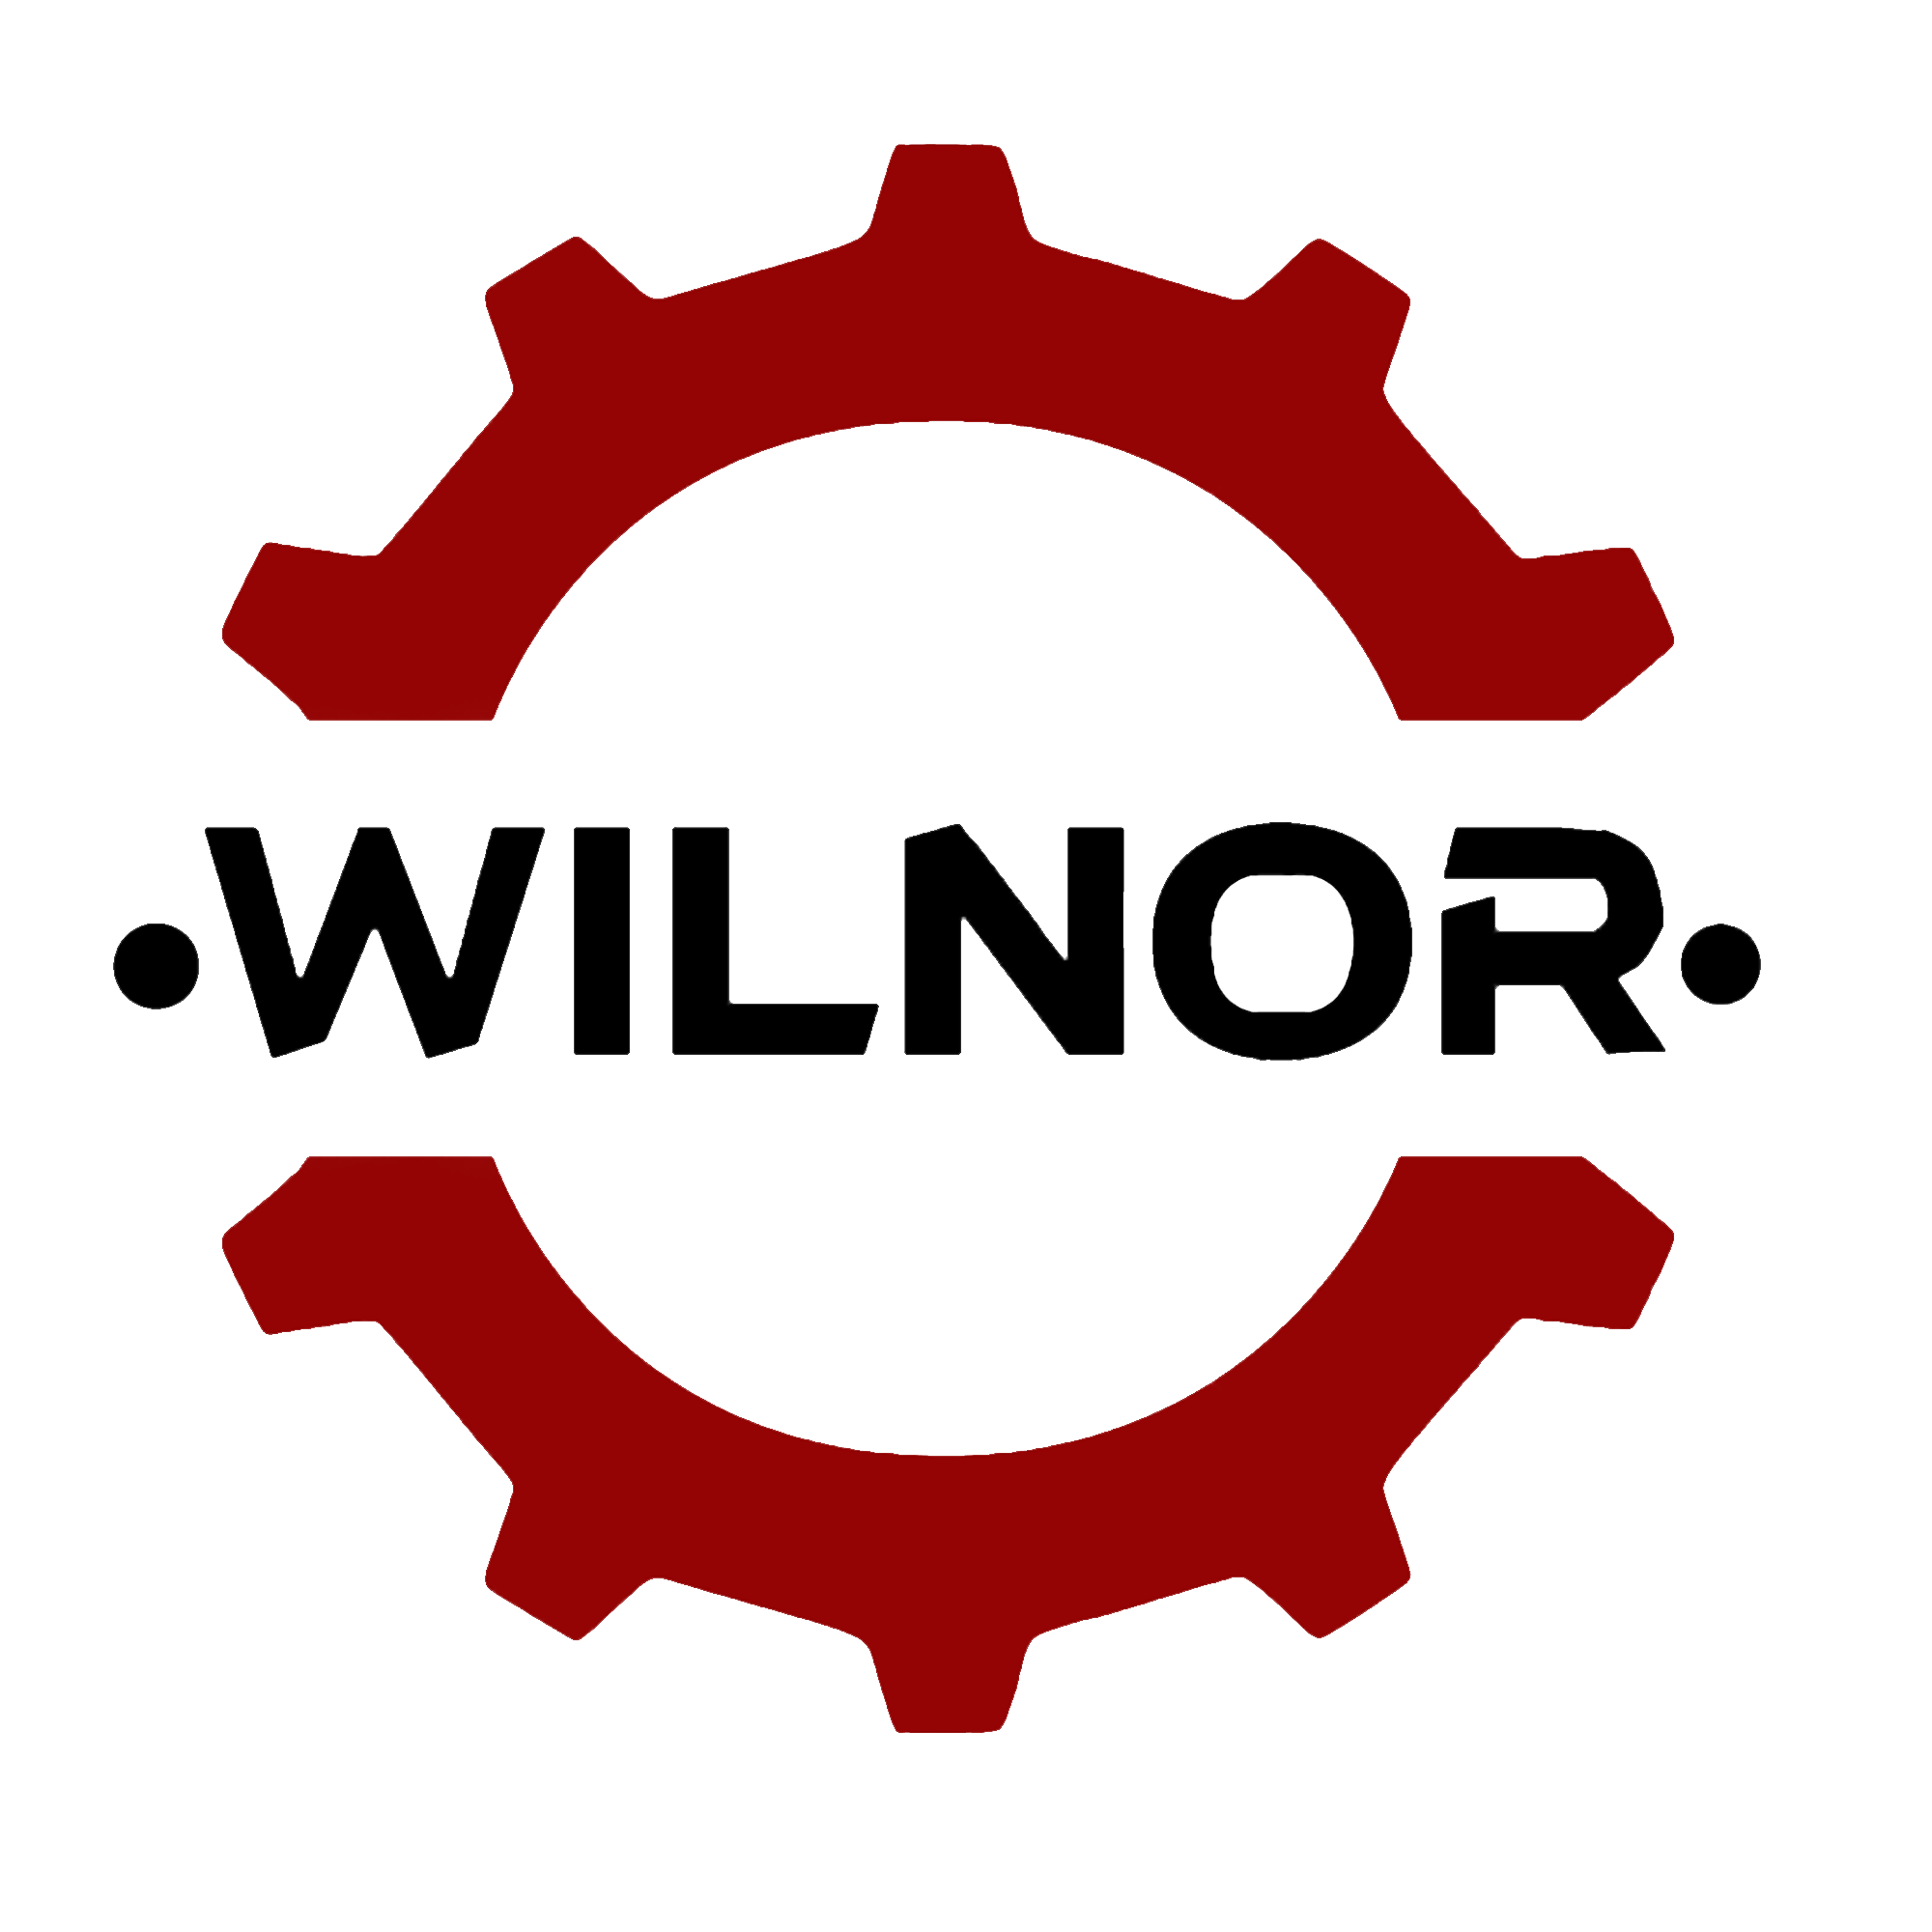 Wilnor